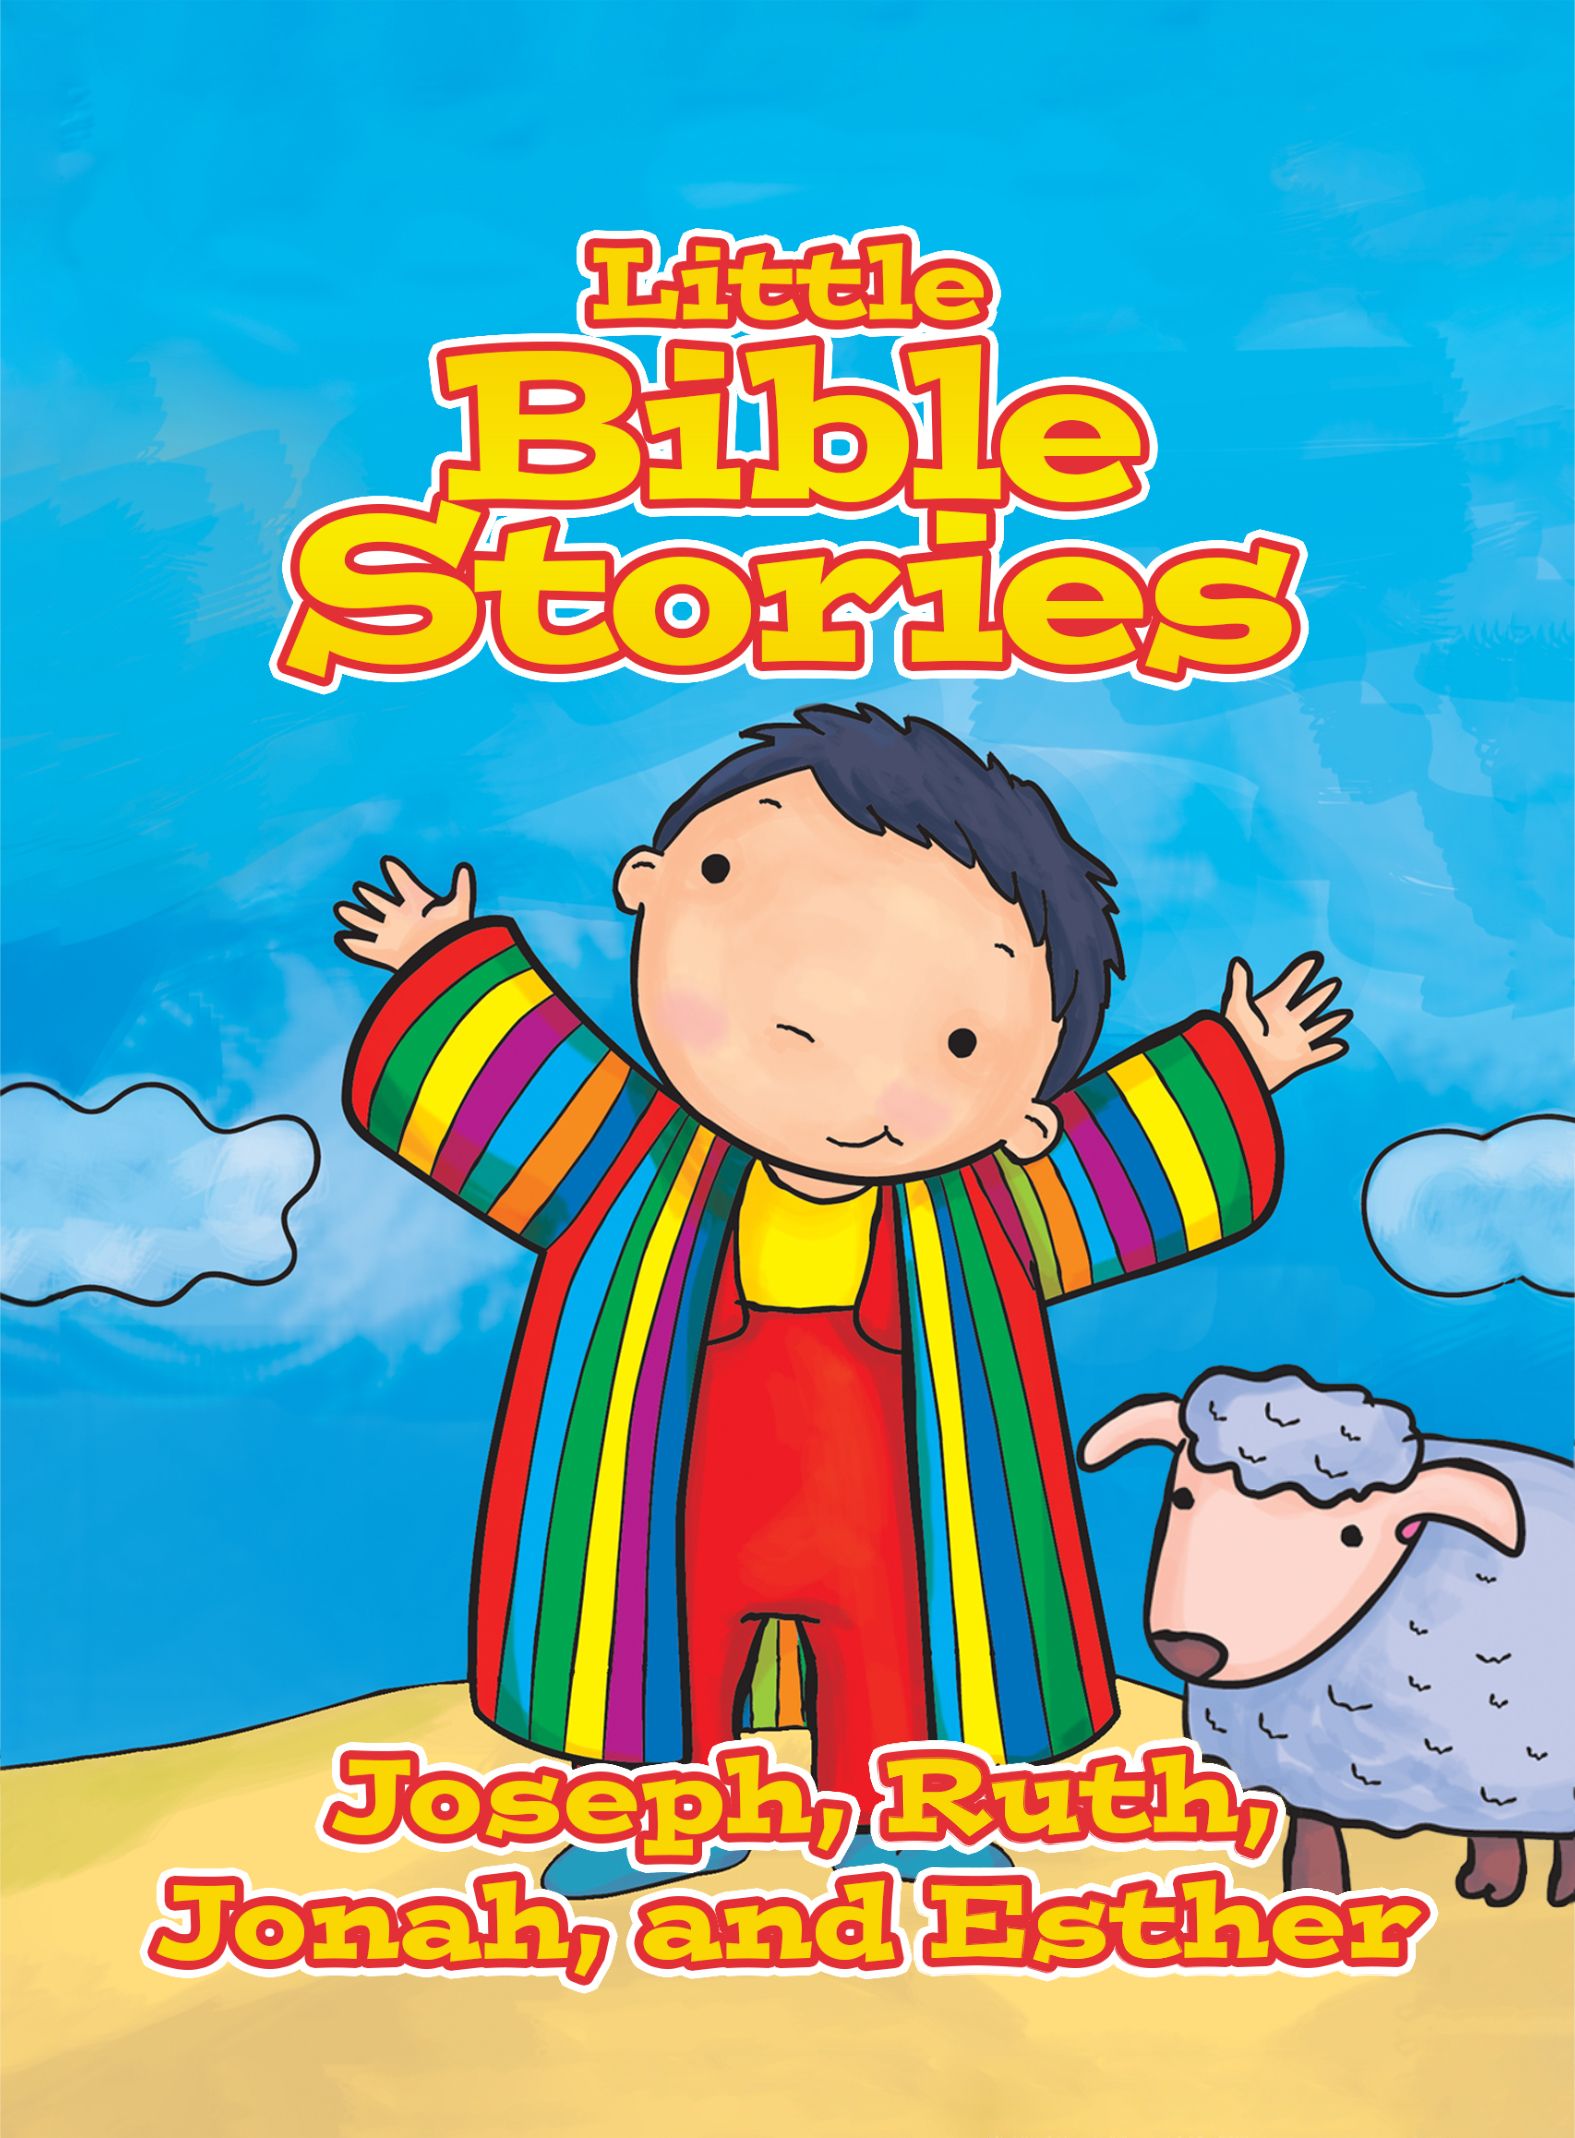 Piccole storie della Bibbia: Giuseppe, Ruth, Giona e Ester